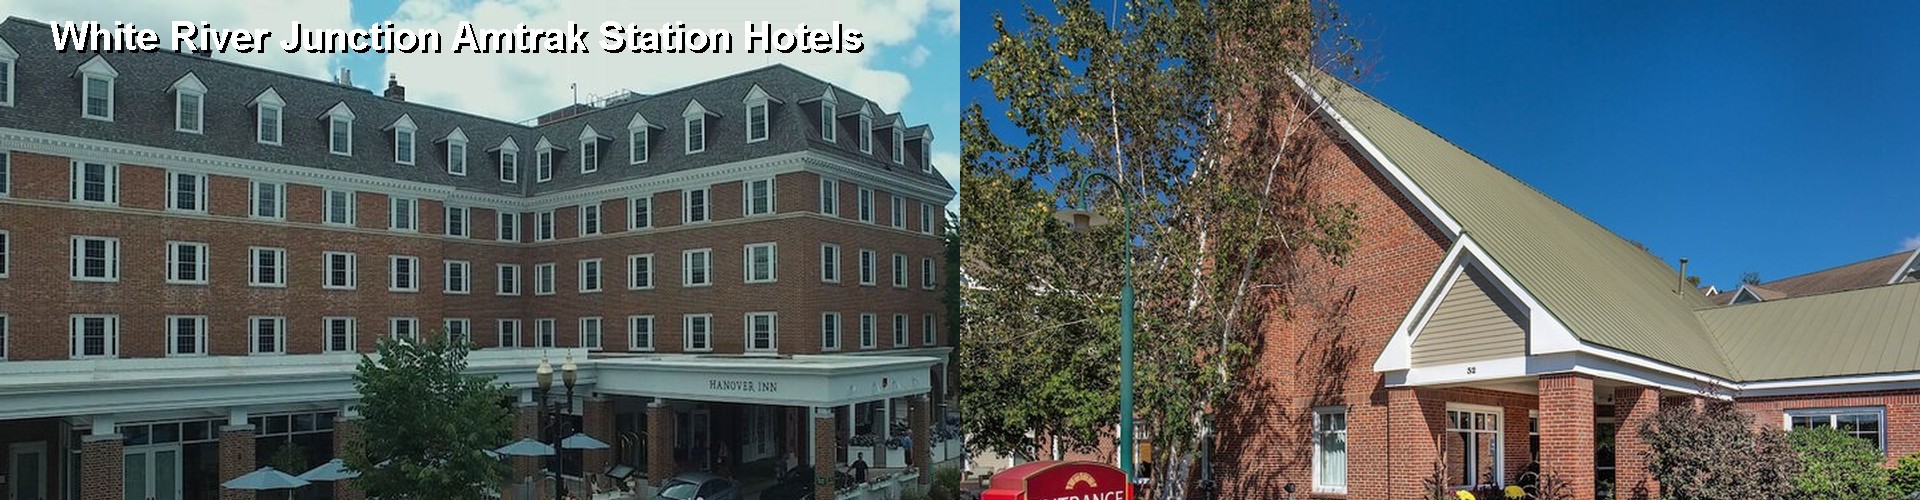 5 Best Hotels near White River Junction Amtrak Station